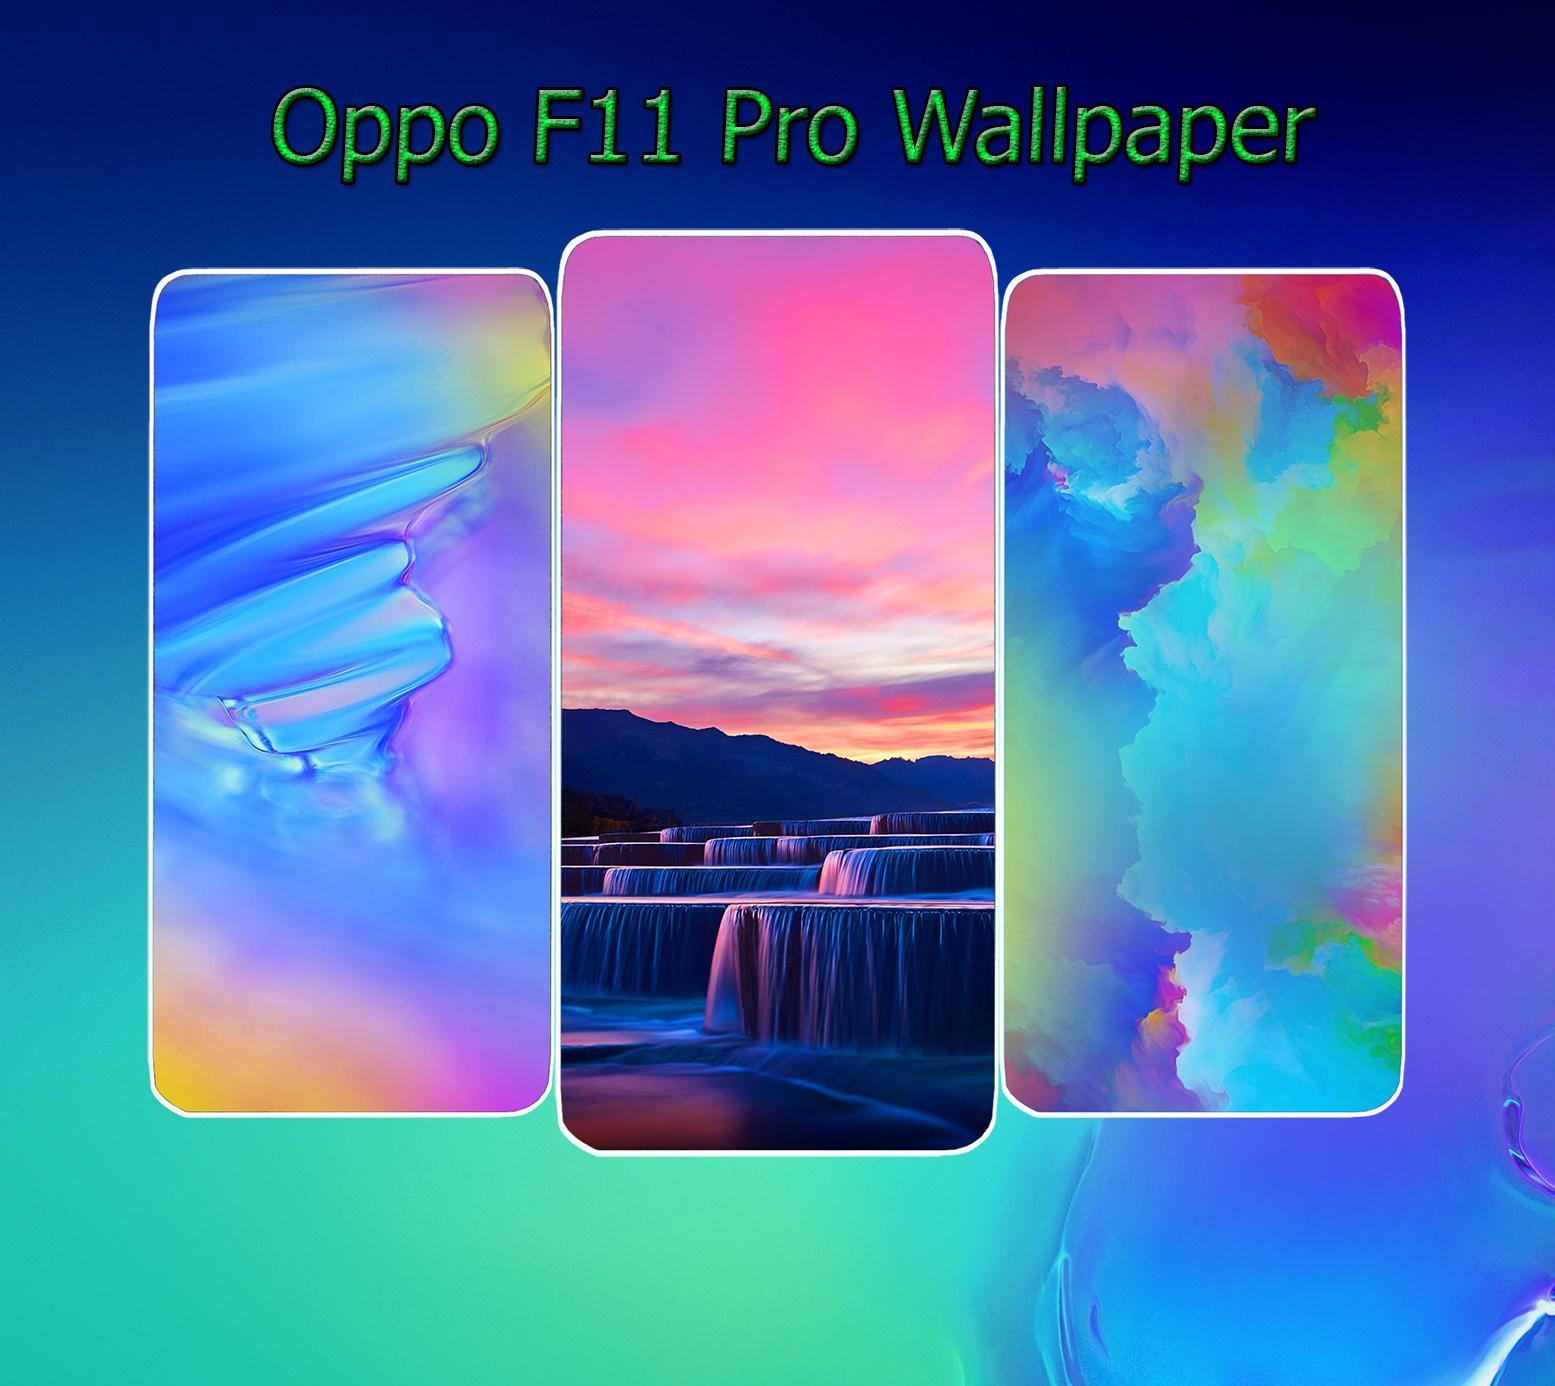 Hãy trang trí cho chiếc điện thoại của bạn với hình nền Oppo F11 Pro đầy đủ sắc màu và sự tinh tế. Dùng hình nền này để thể hiện phong cách thẩm mỹ của bạn và khẳng định sự đẳng cấp của chiếc điện thoại đáng mơ ước này. Xem hình ảnh liên quan để có thêm cảm hứng.